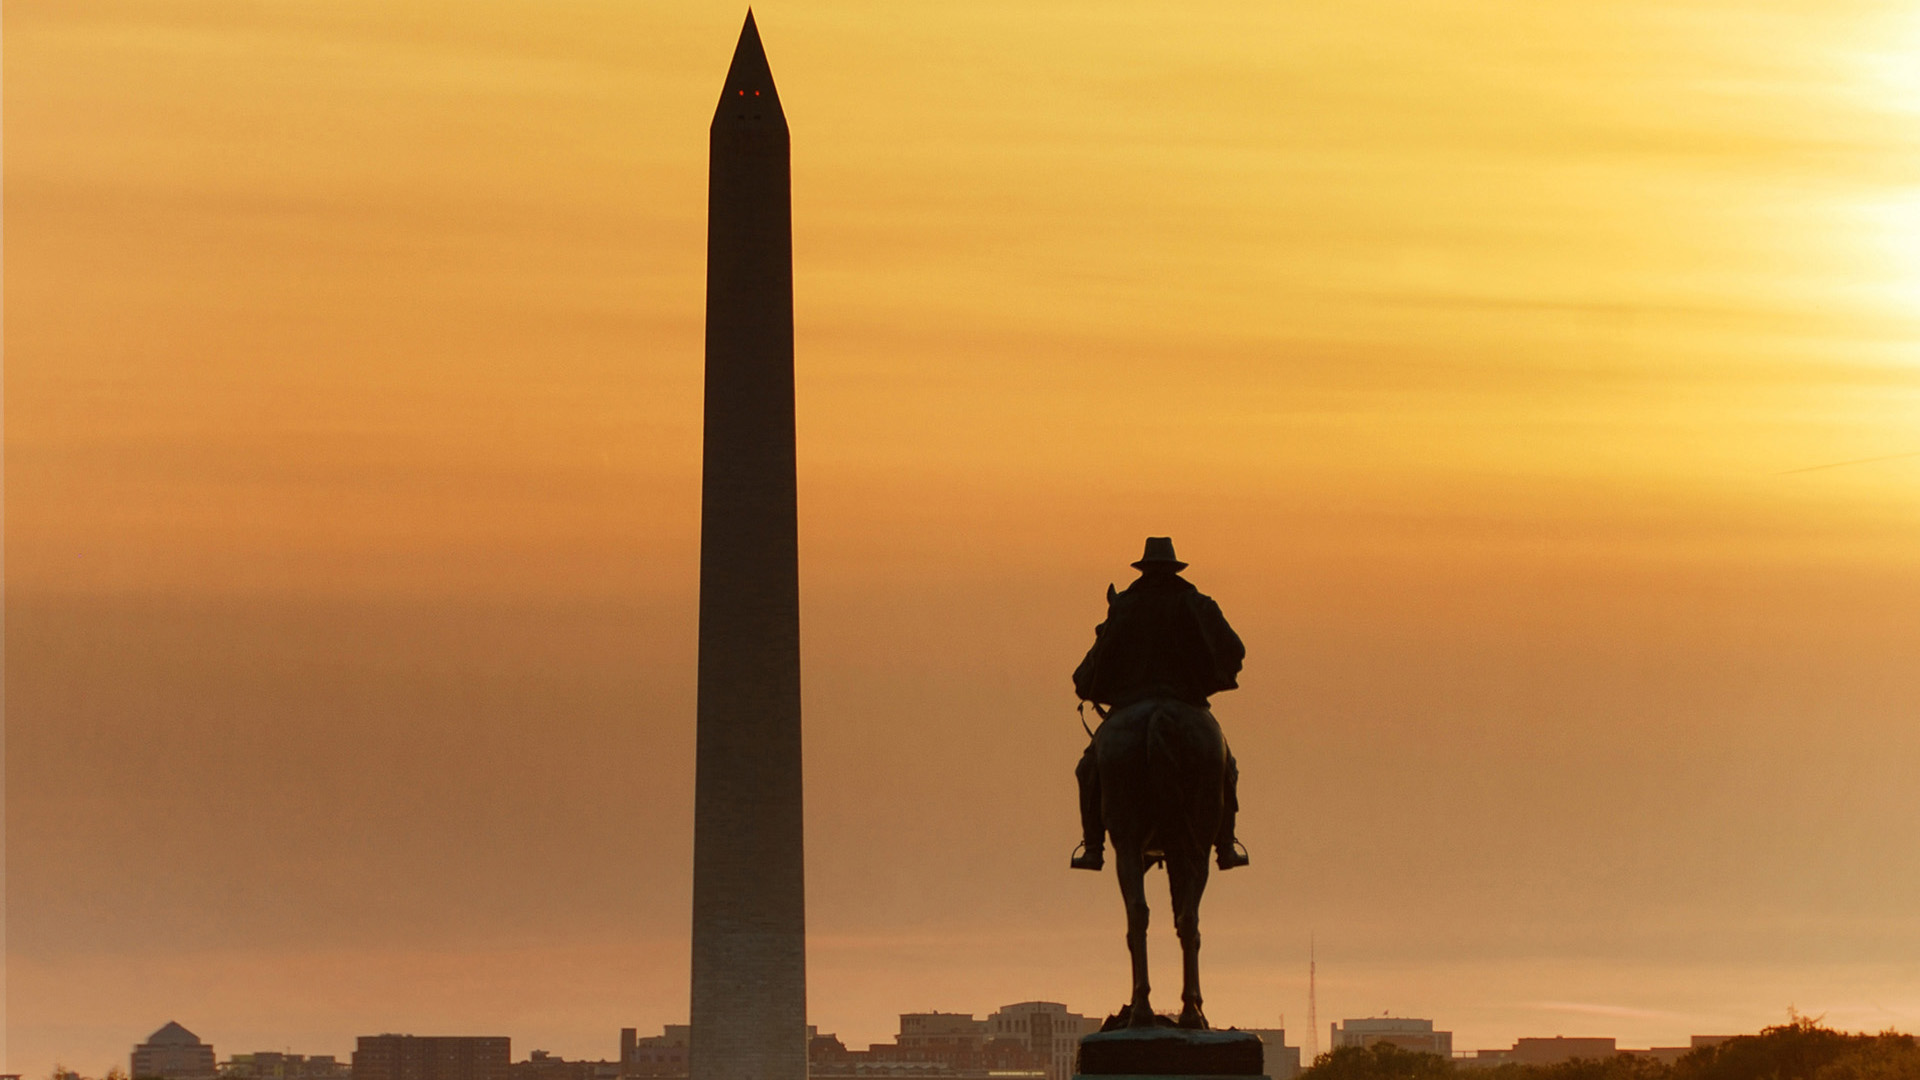 Washington Monument at Sunset, Washington DC, United States